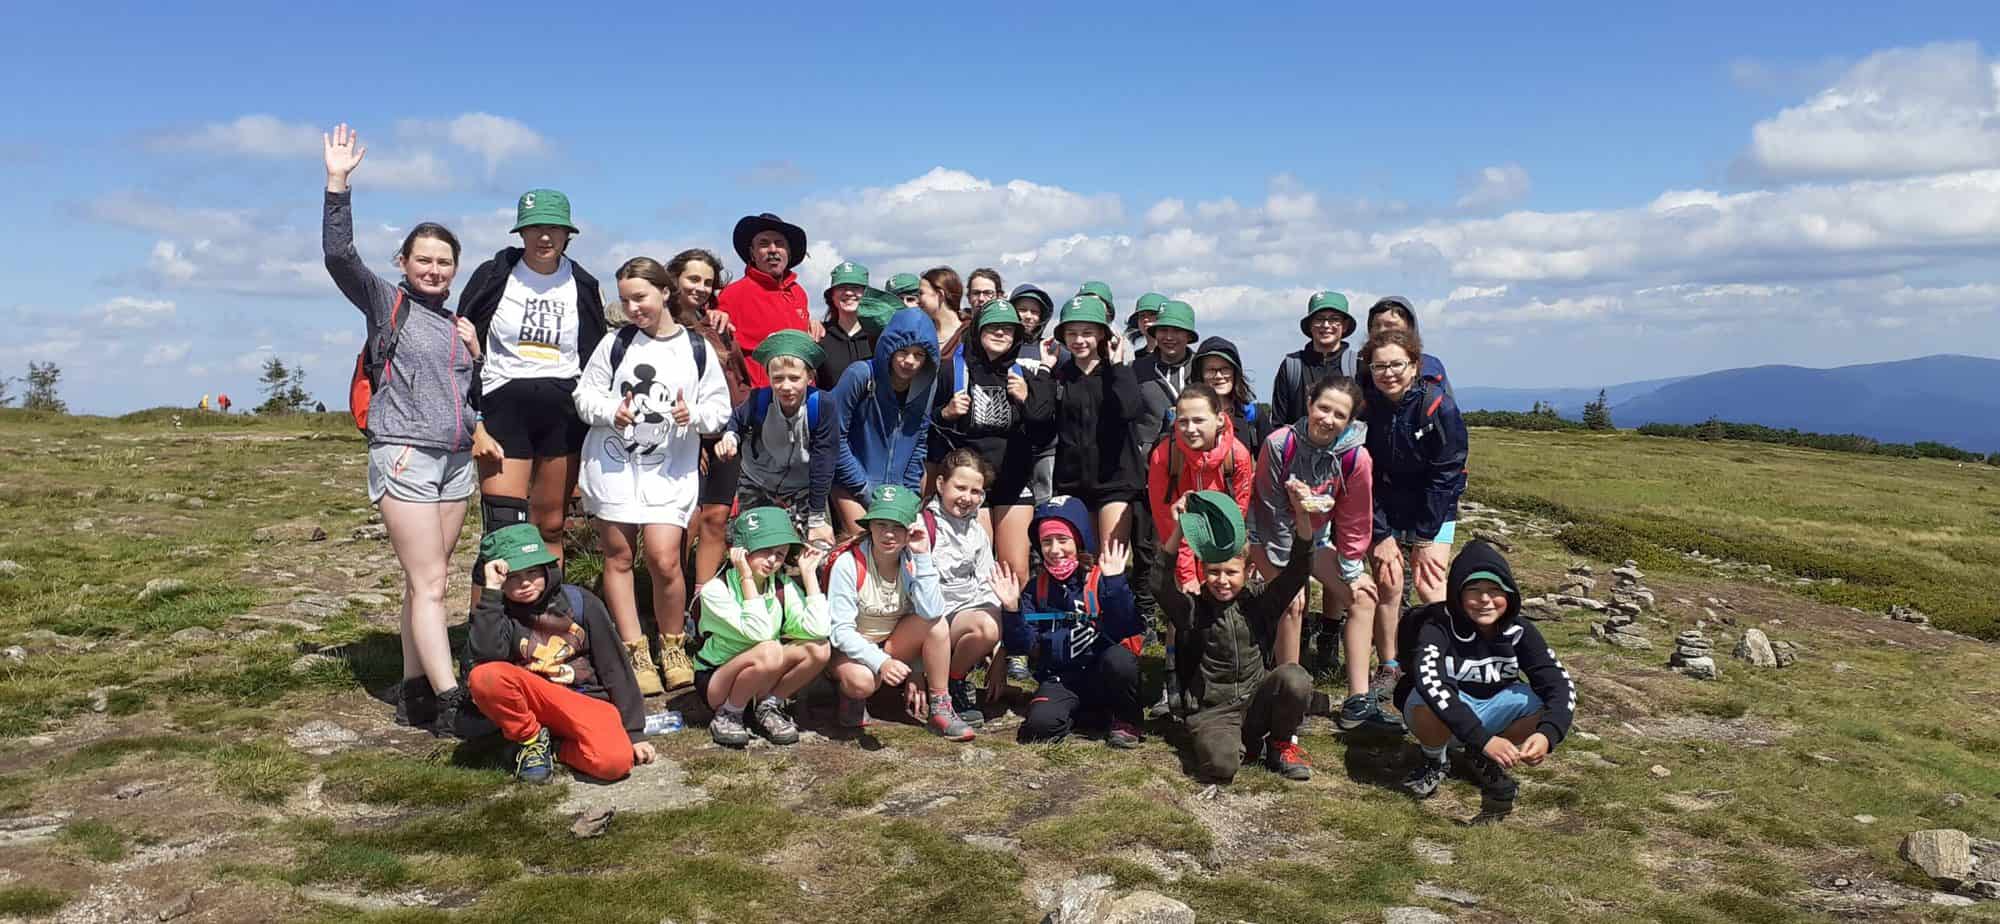 Grupa dzieci, młodzieży i dorosłych pozuje do zdjęcia na szczycie góry. w tle pasmo gór i błękitne niebo z chmurami.